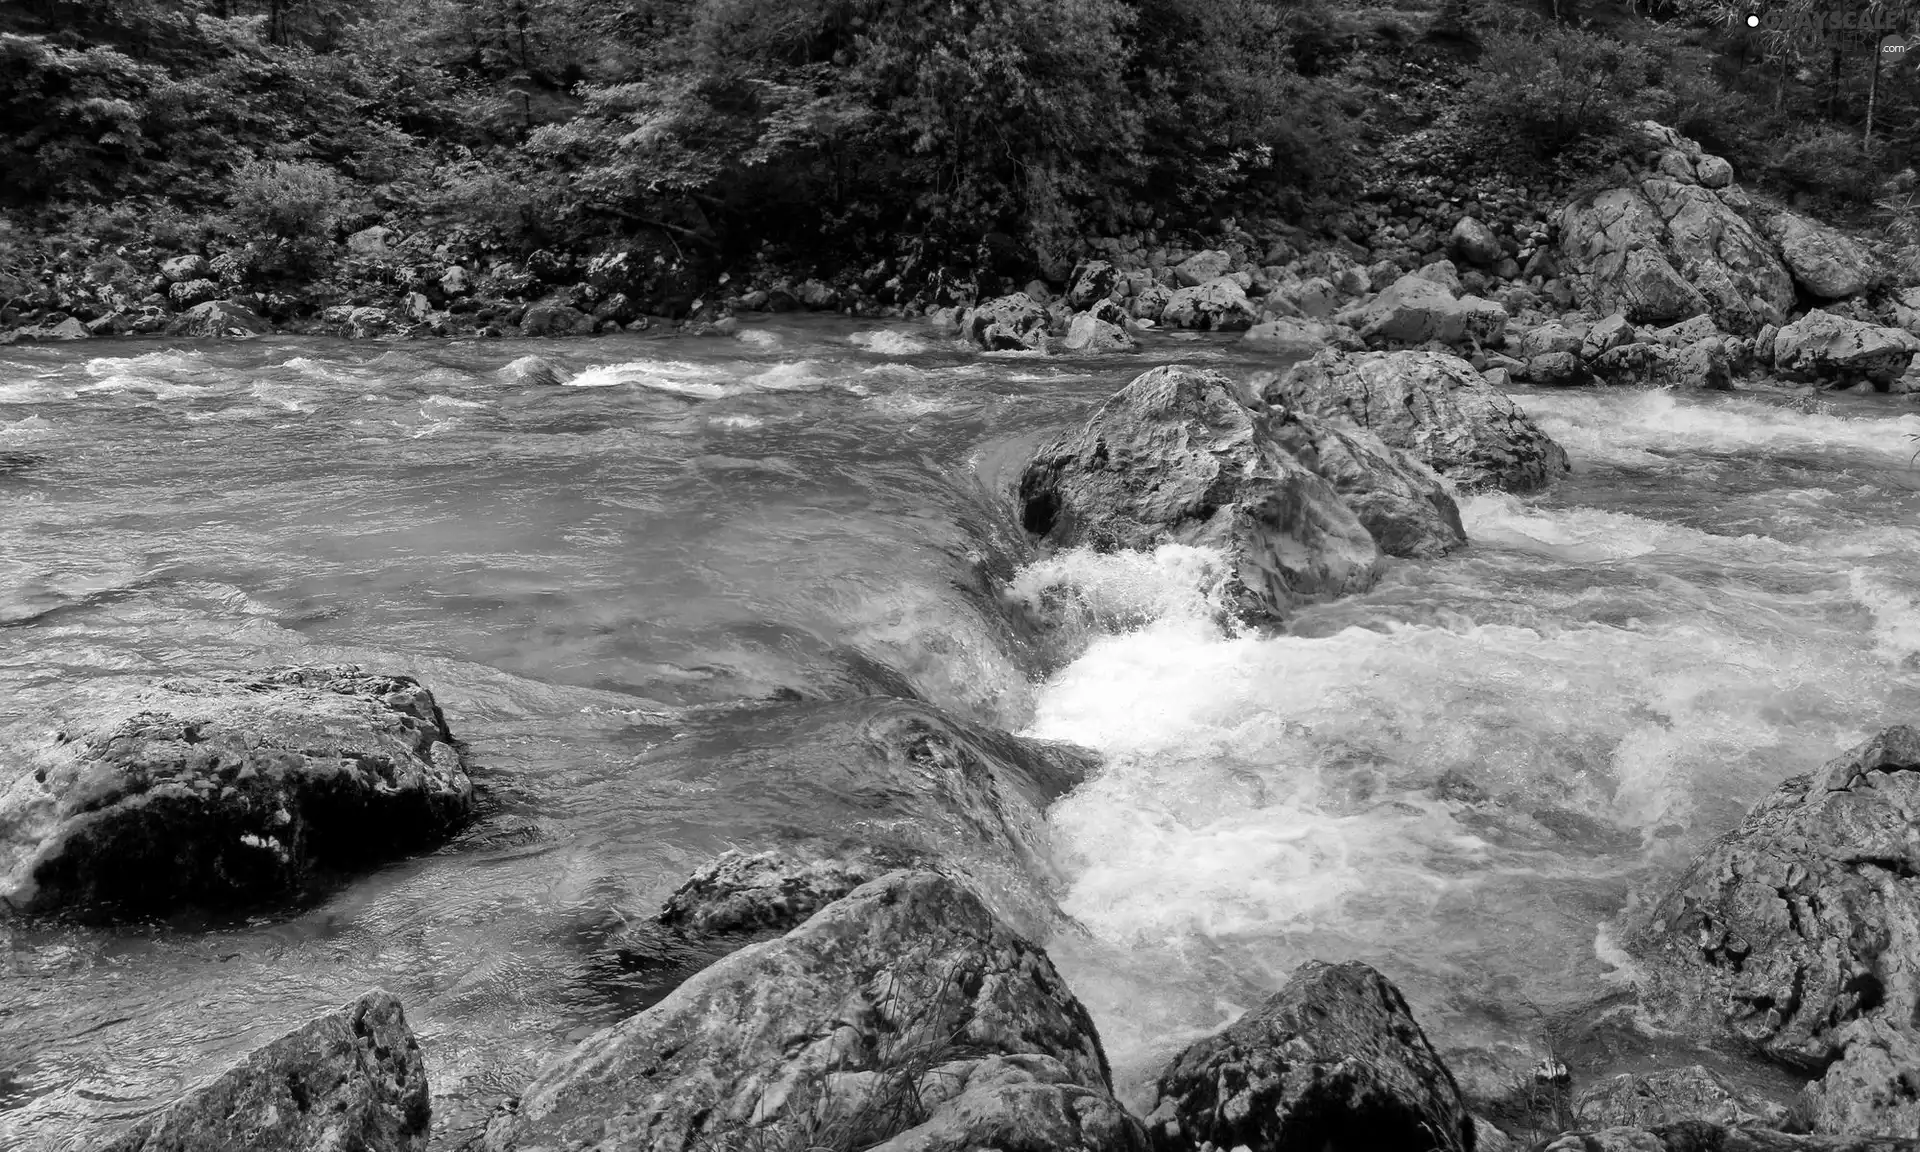 River, foamed, water, Stones